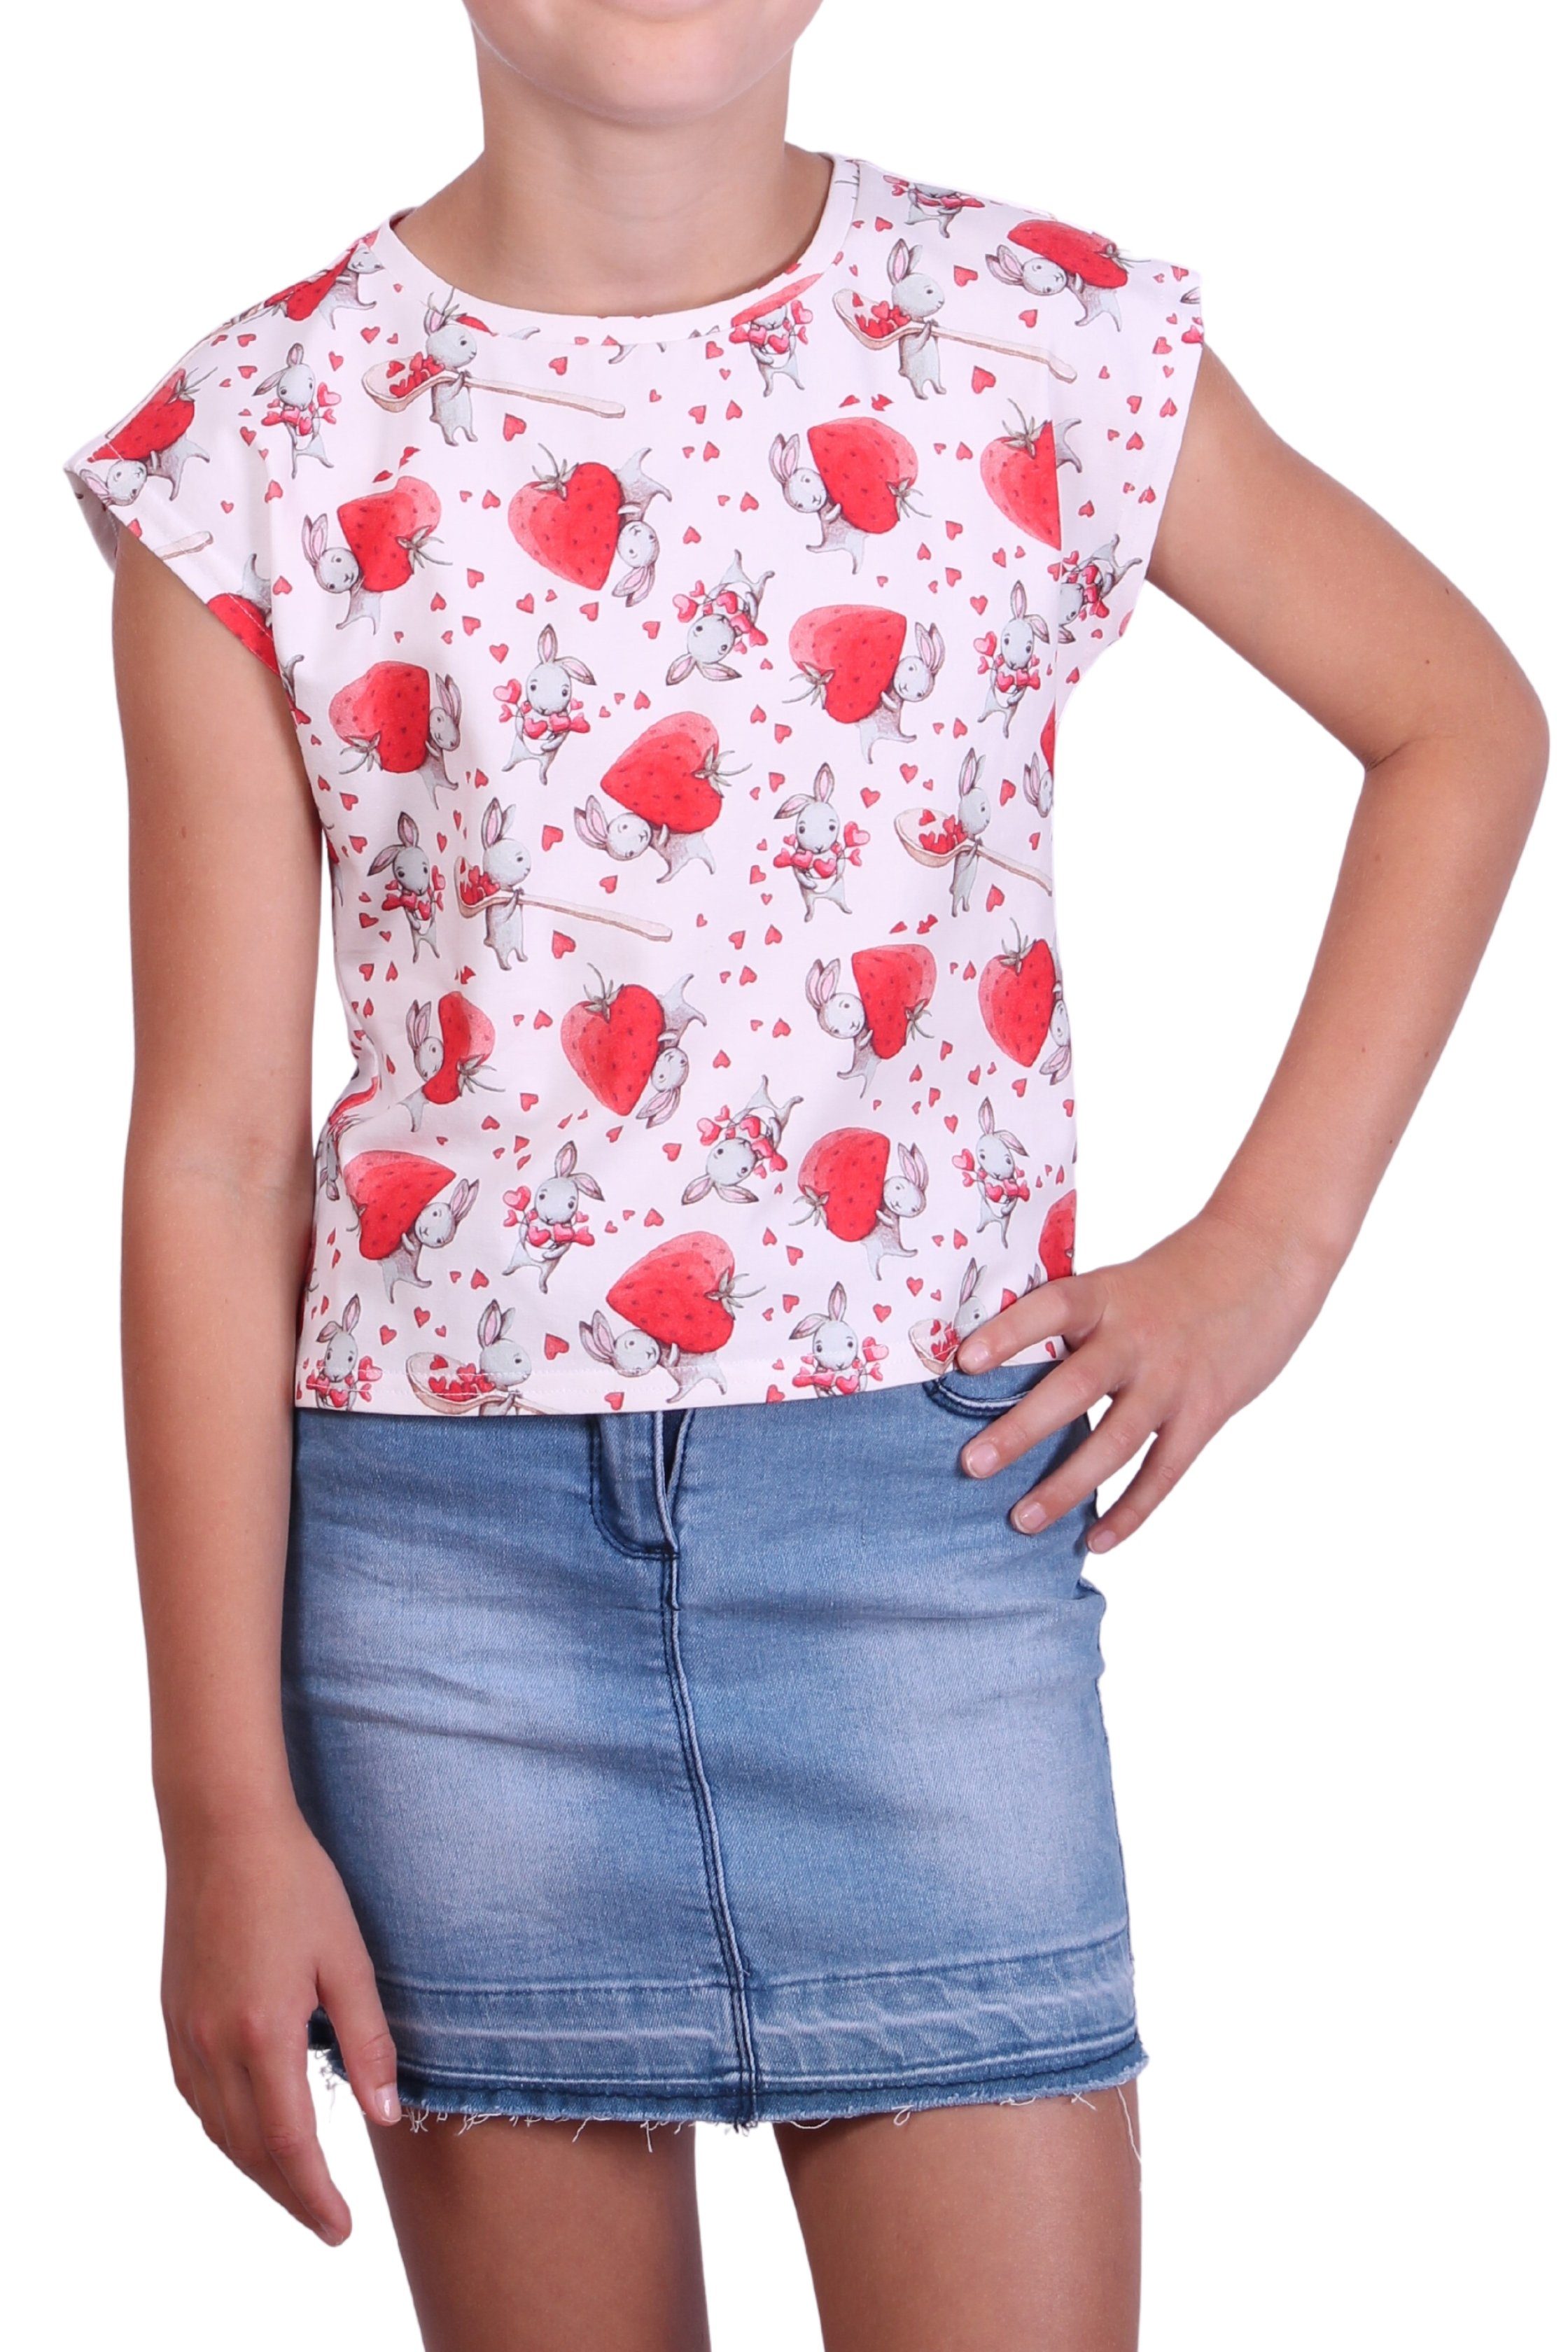 coolismo T-Shirt Print-Shirt für Mädchen Alloverprint, Baumwolle Rundhalsausschnitt, Erdbeeren-Häschen-Motiv mit